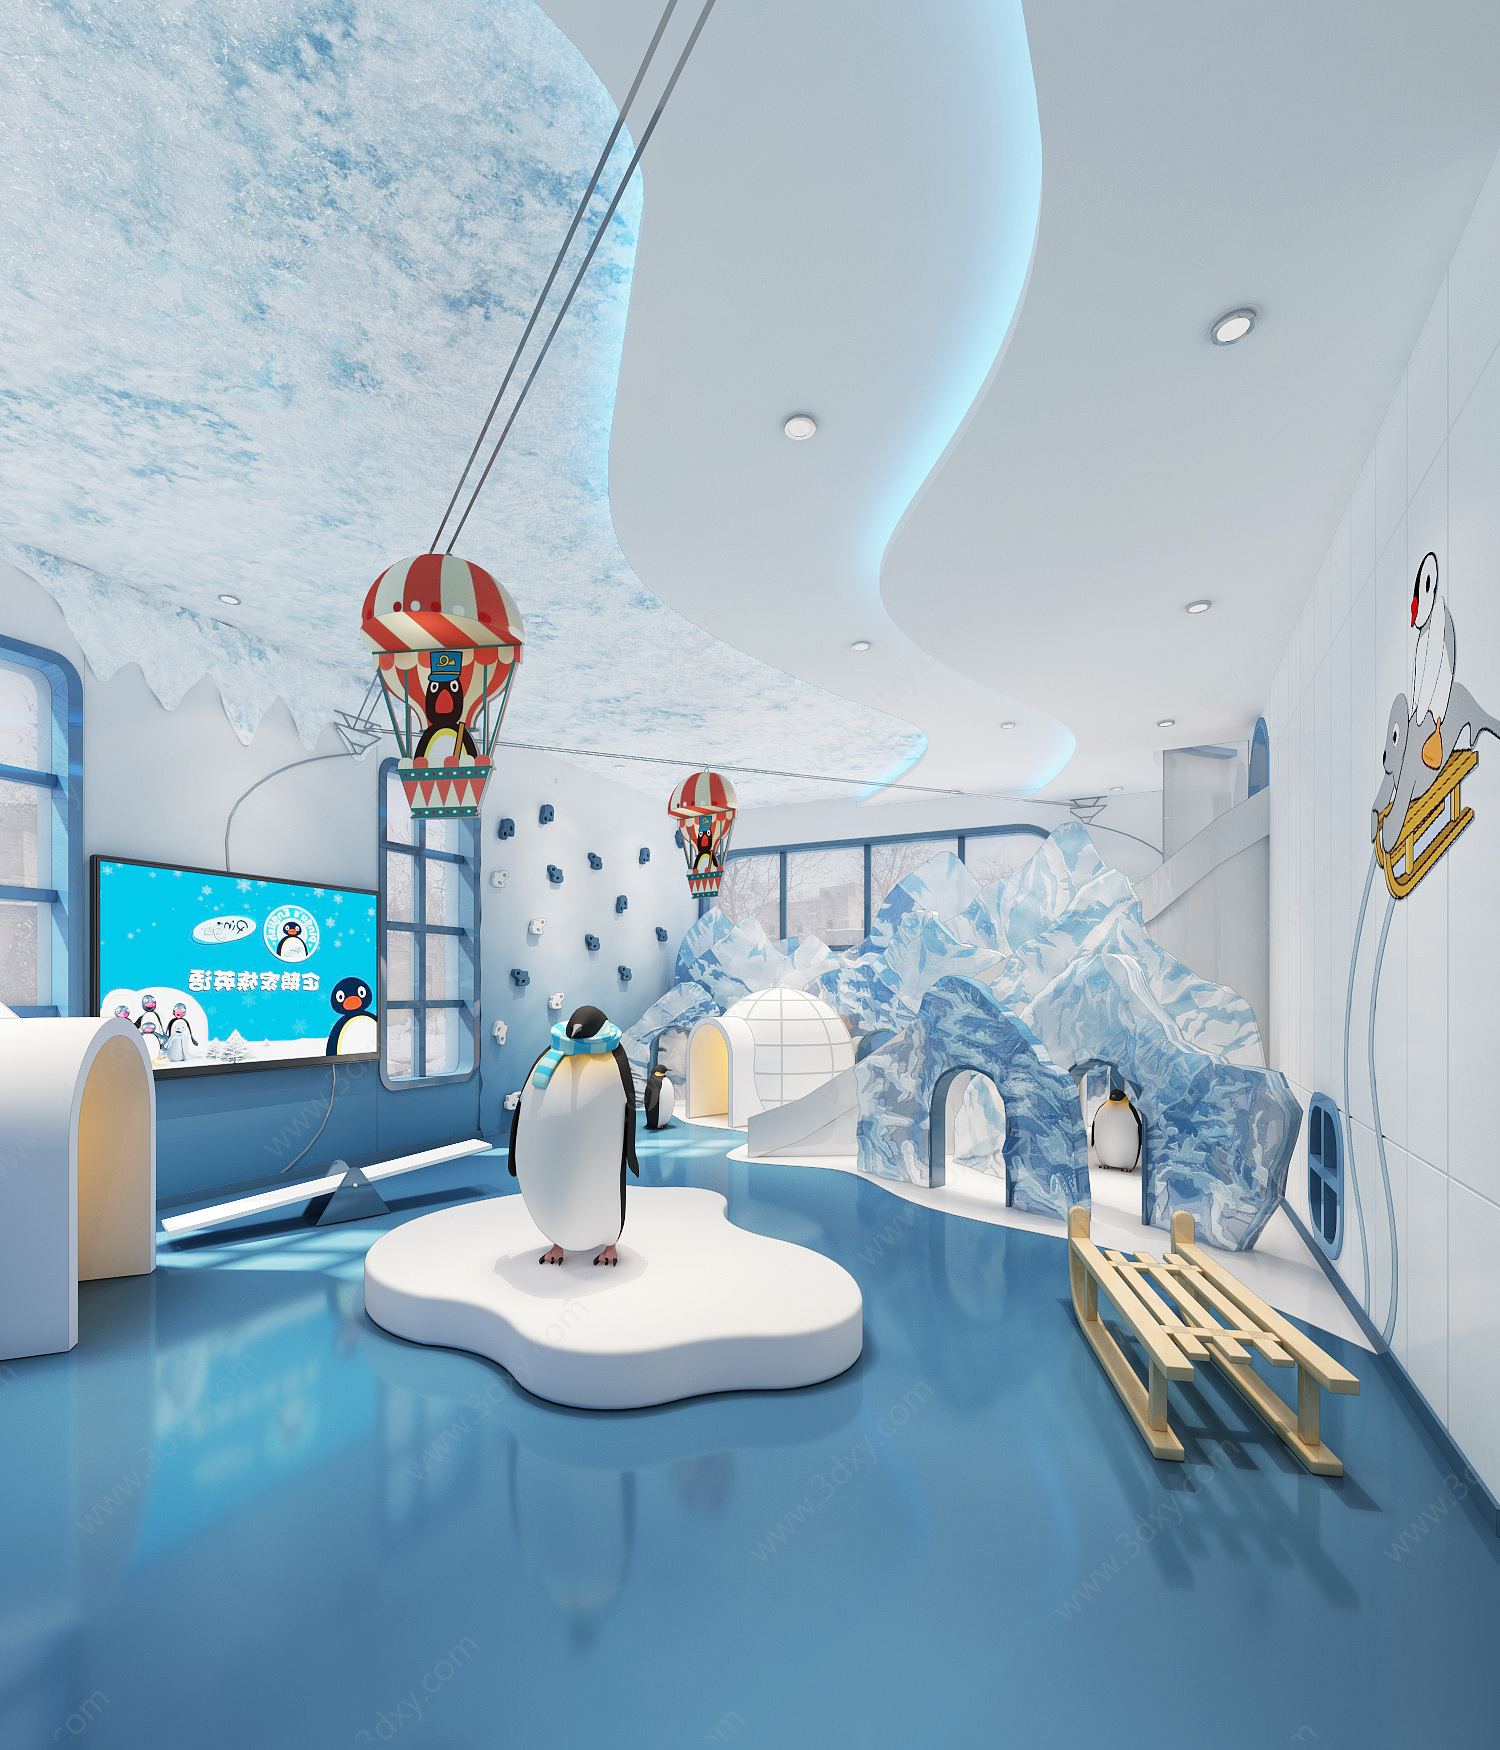 企鹅主题游乐室3D模型